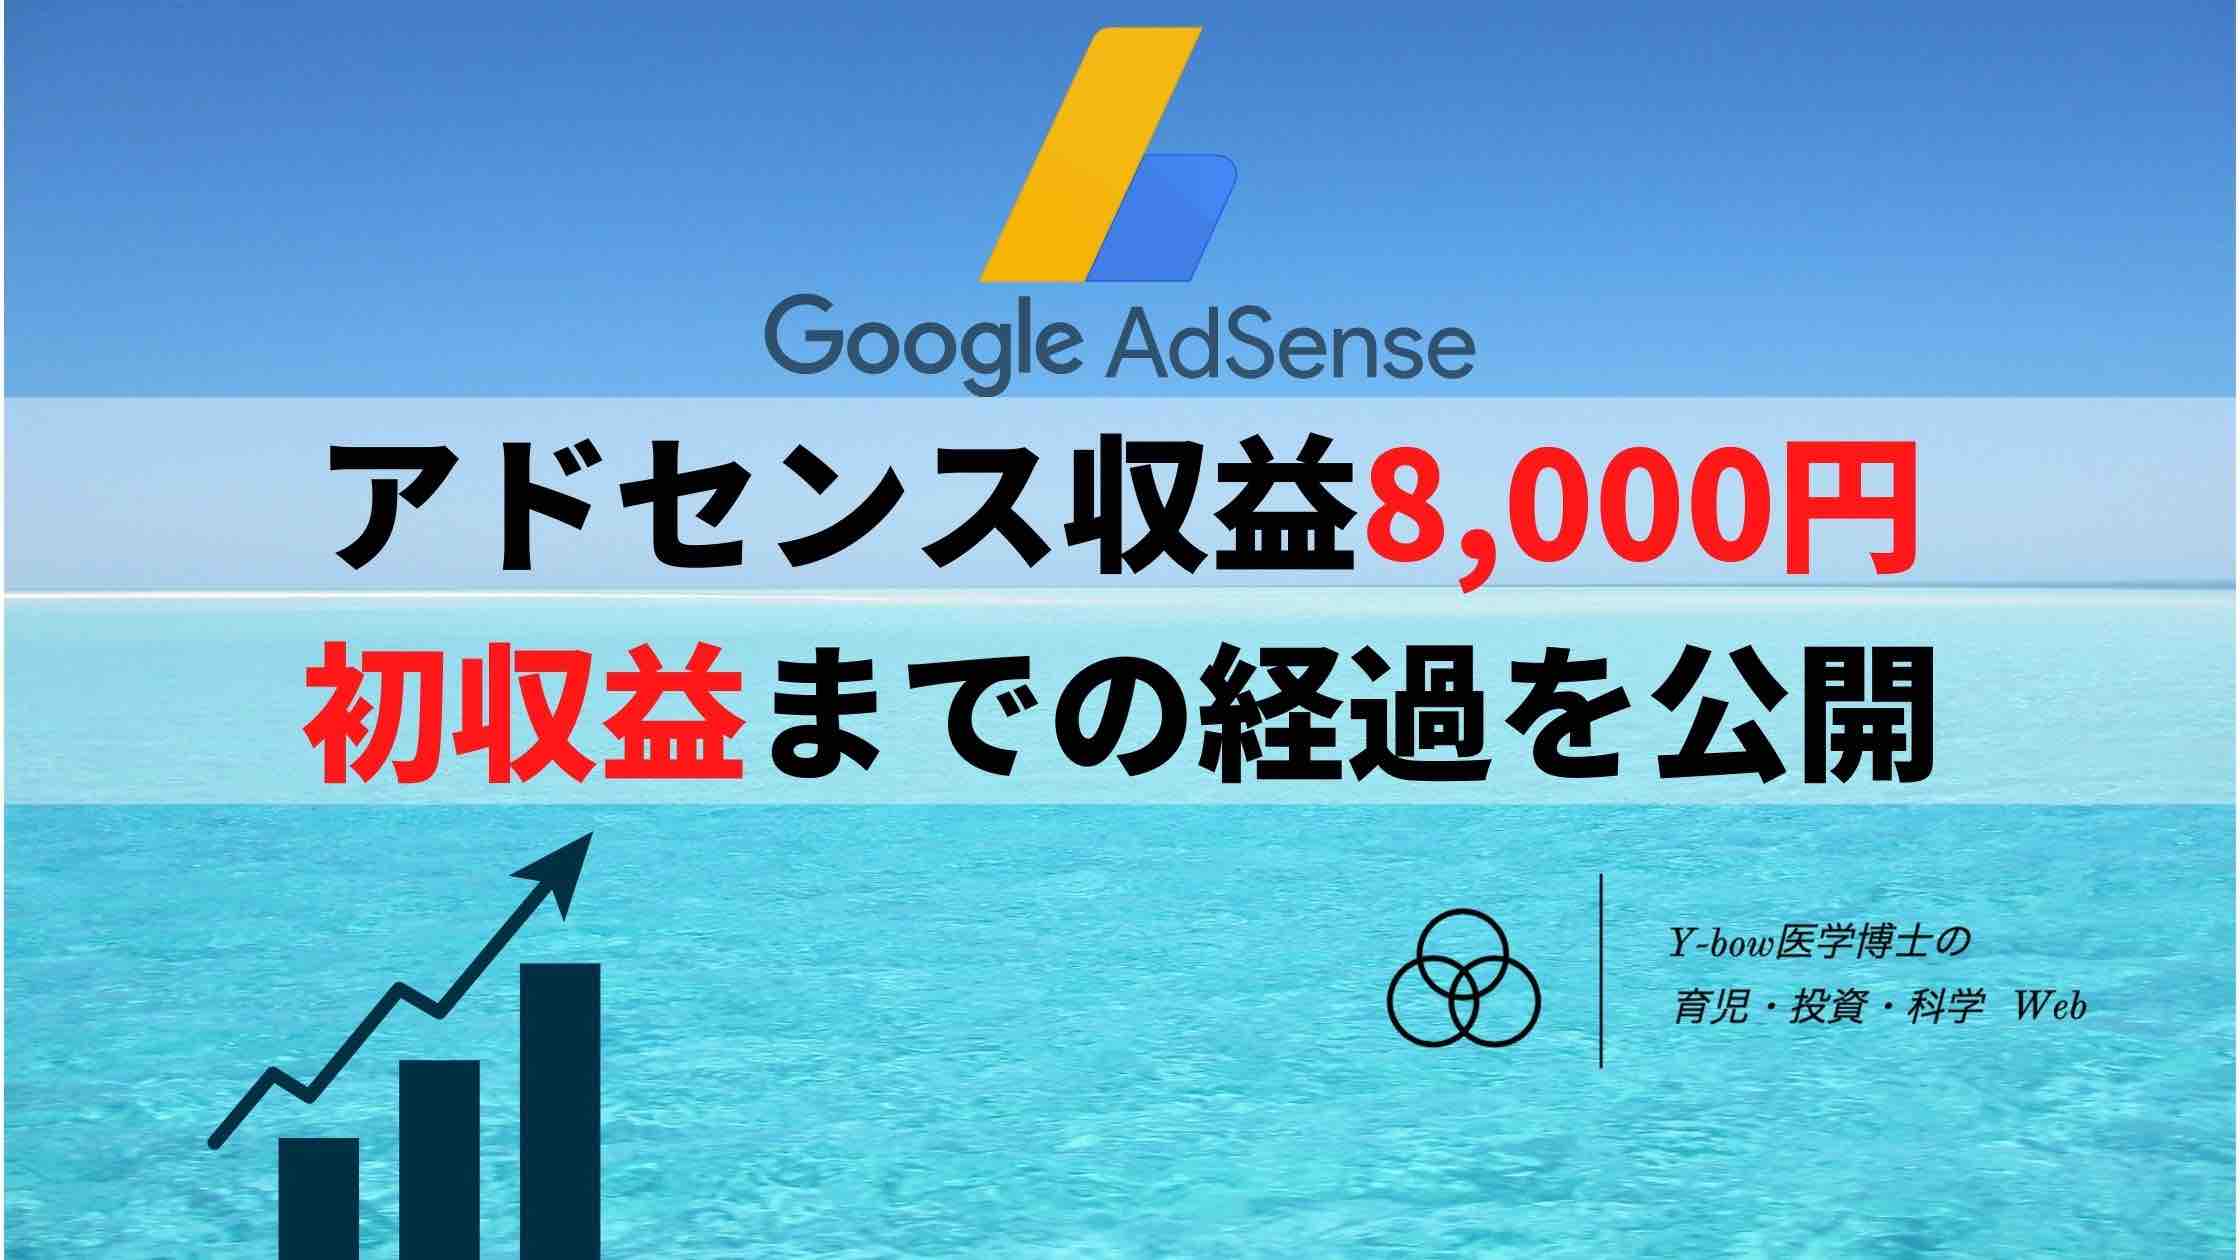 adsense-8000-yen